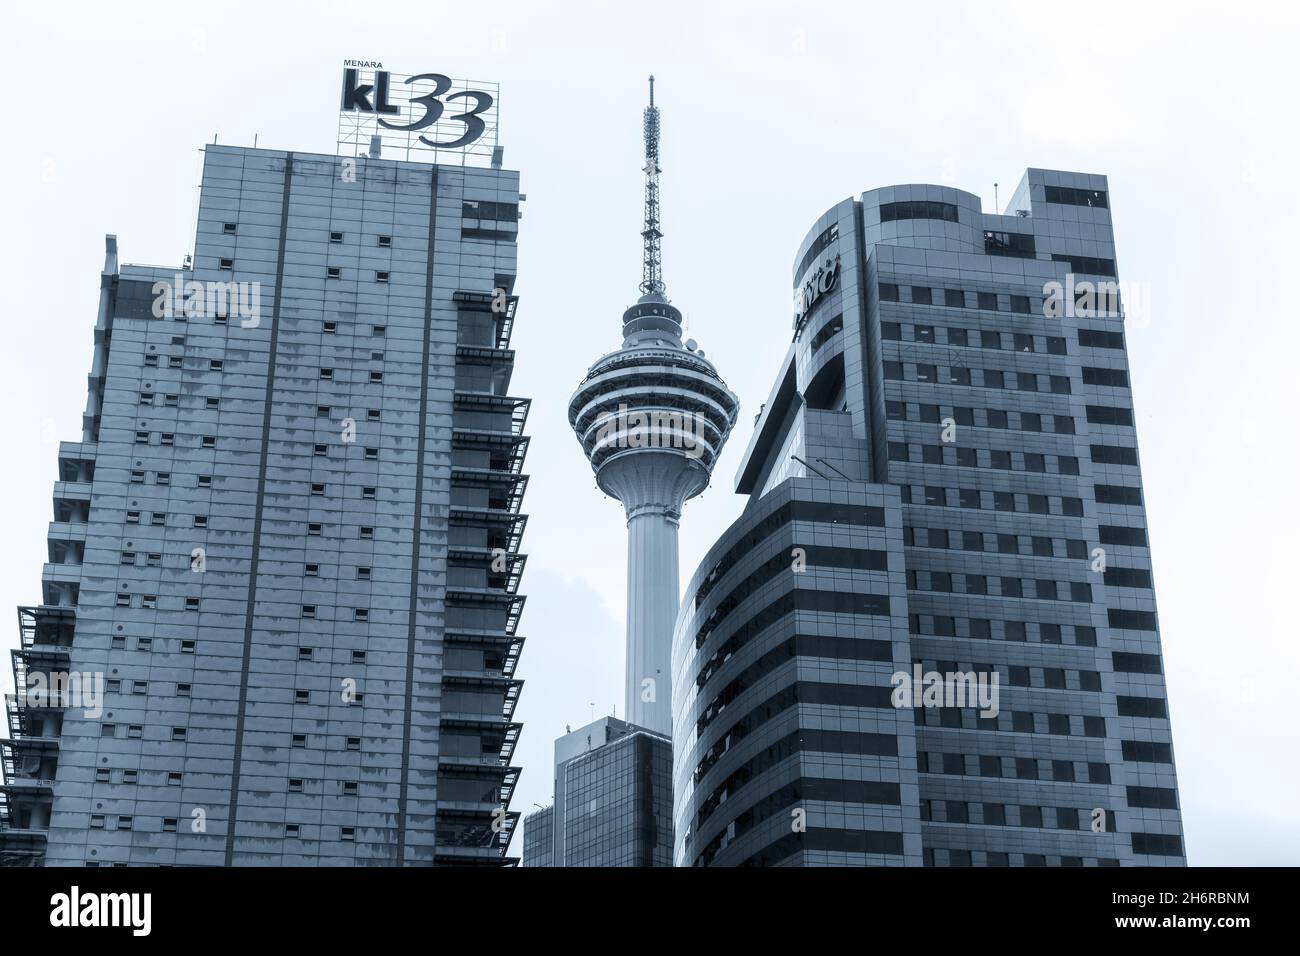 Kuala Lumpur, Malaisie - 25 novembre 2019 : gratte-ciel du centre-ville de Kuala Lumpur avec immeubles de bureaux et tour de télévision, fond photo bleu Banque D'Images